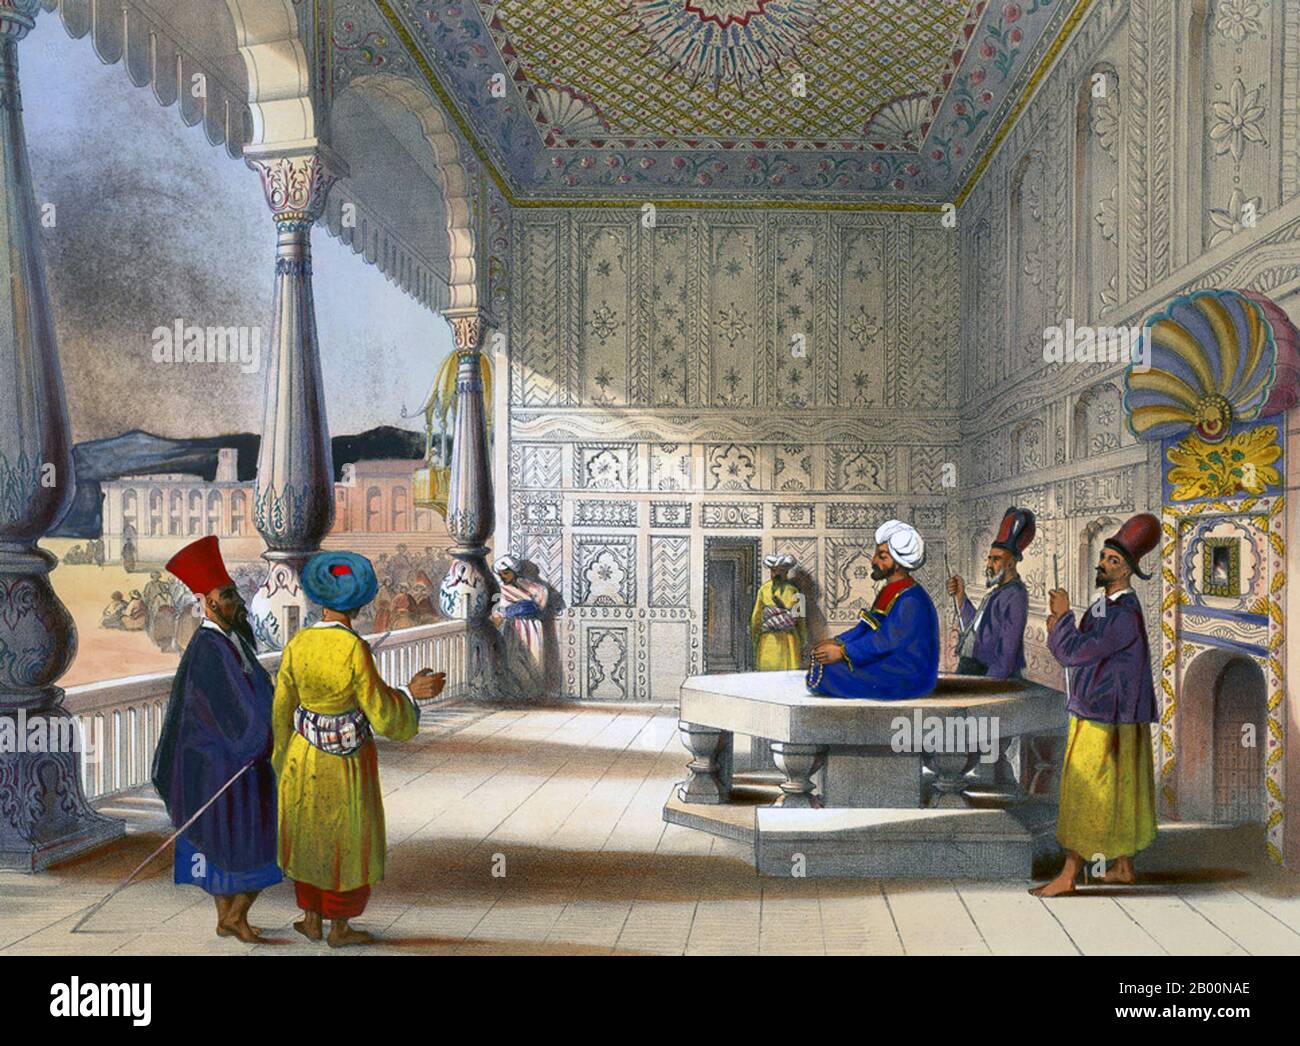 Afghanistan: 'Interno del Palazzo di Shauh Shujah ool Moolk, il Re tardo di Caubul'. Piastra litografica 3 da Afghaunistan di James Rattray (1818-1854), 1848. Shuja Shah Durrani (conosciuto anche come Shah Shujah, Shoja Shah, Shujah al-Mulk) (c.. 4 novembre 1785 – 5 aprile 1842) è stato il governatore dell'Impero Durrani dal 1803 al 1809. Ha poi governato dal 1839 fino alla sua morte nel 1842. Shuja Shah era della linea Sadozai del gruppo Abdali di Pashtun. Divenne il quinto Emiro dell'Afghanistan. Foto Stock